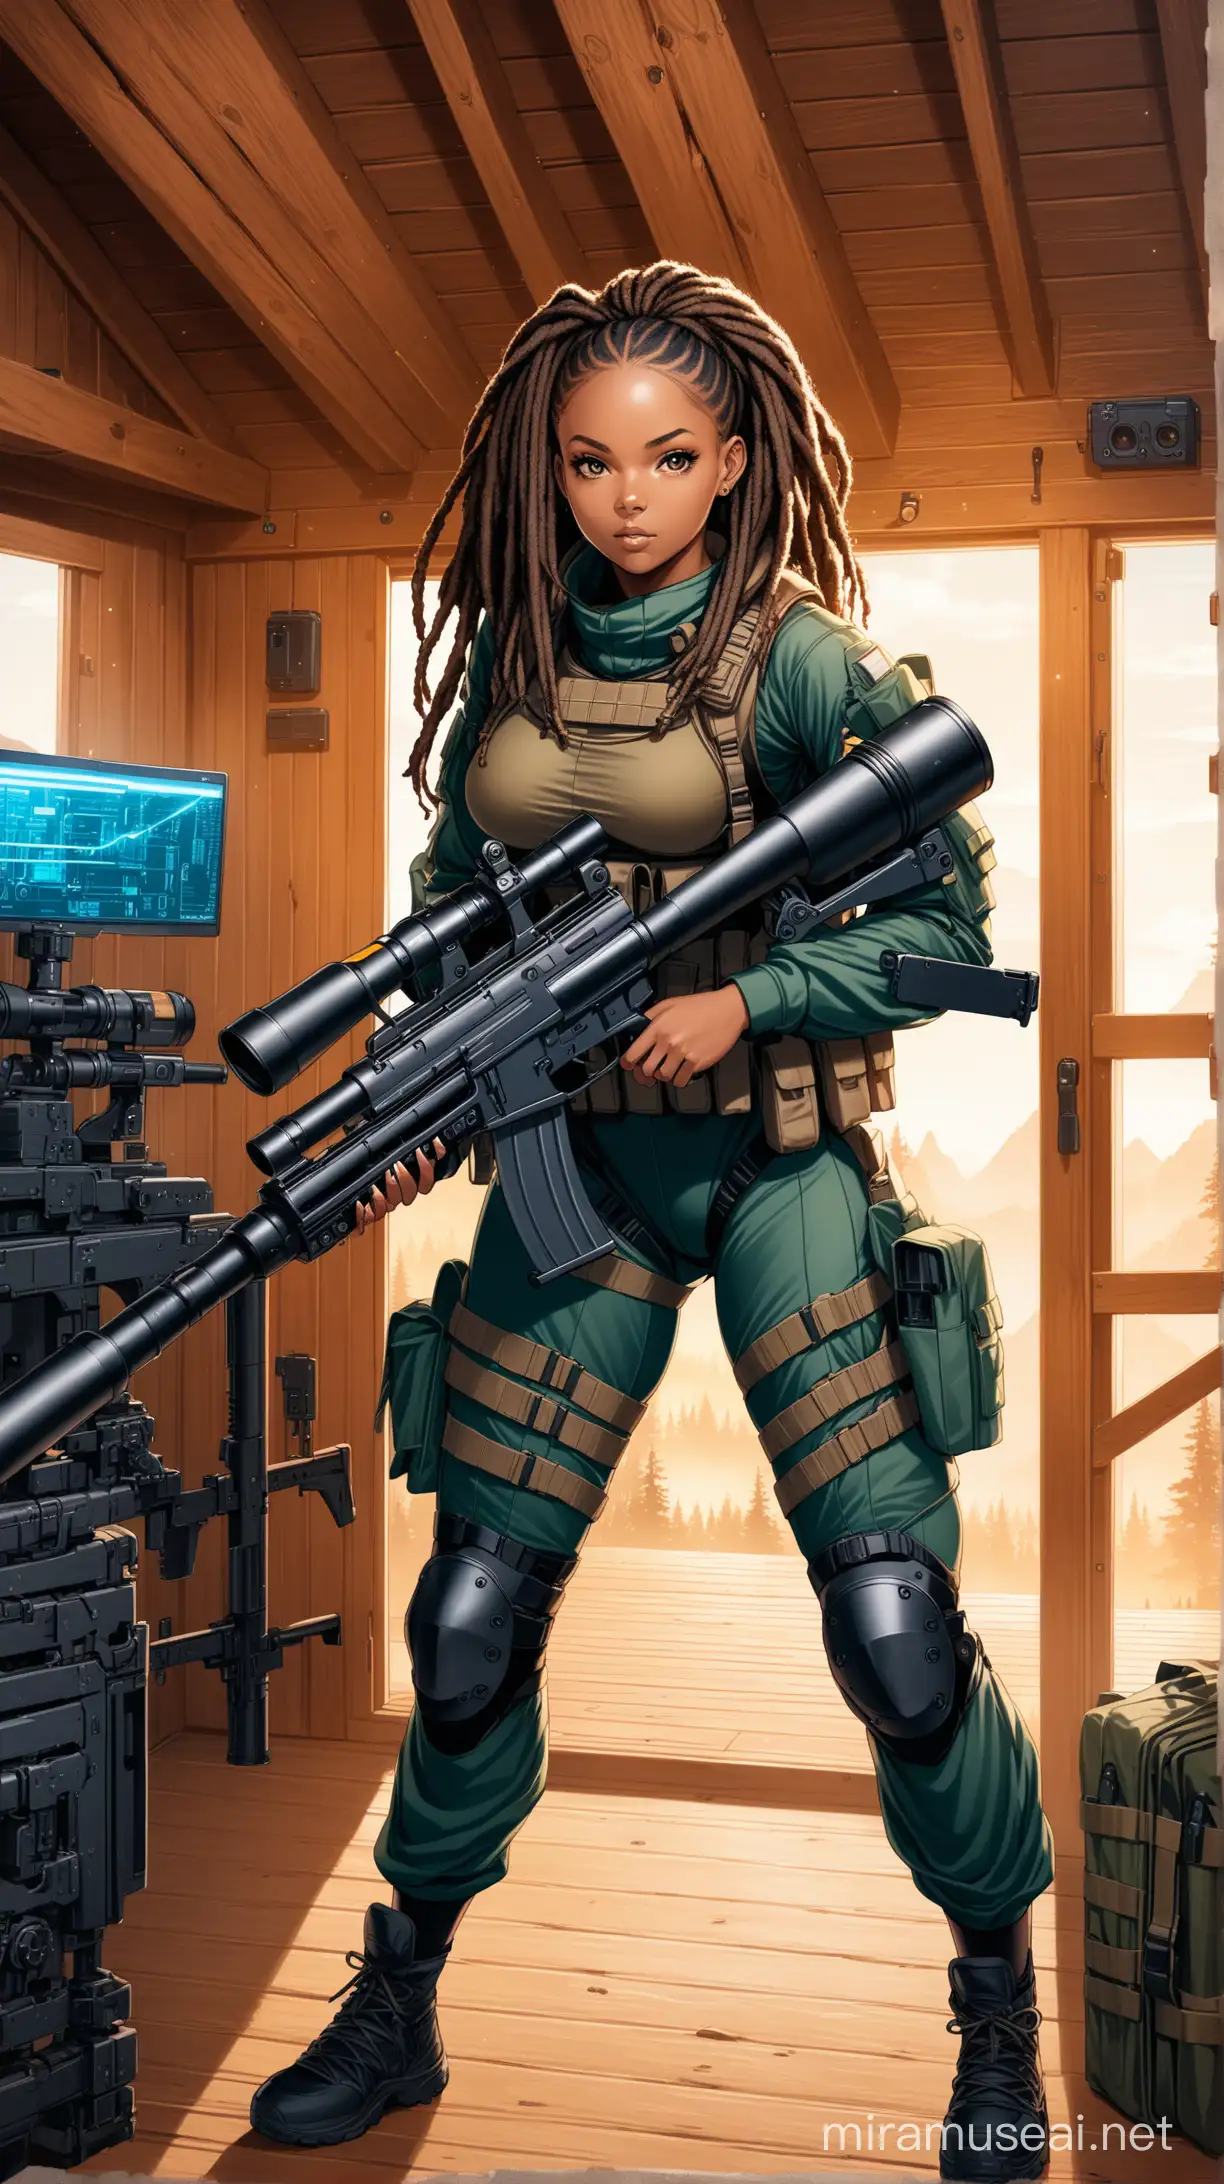 Fierce Black Woman with Dreadlocks Armed with Bazooka in HighTech Cabin